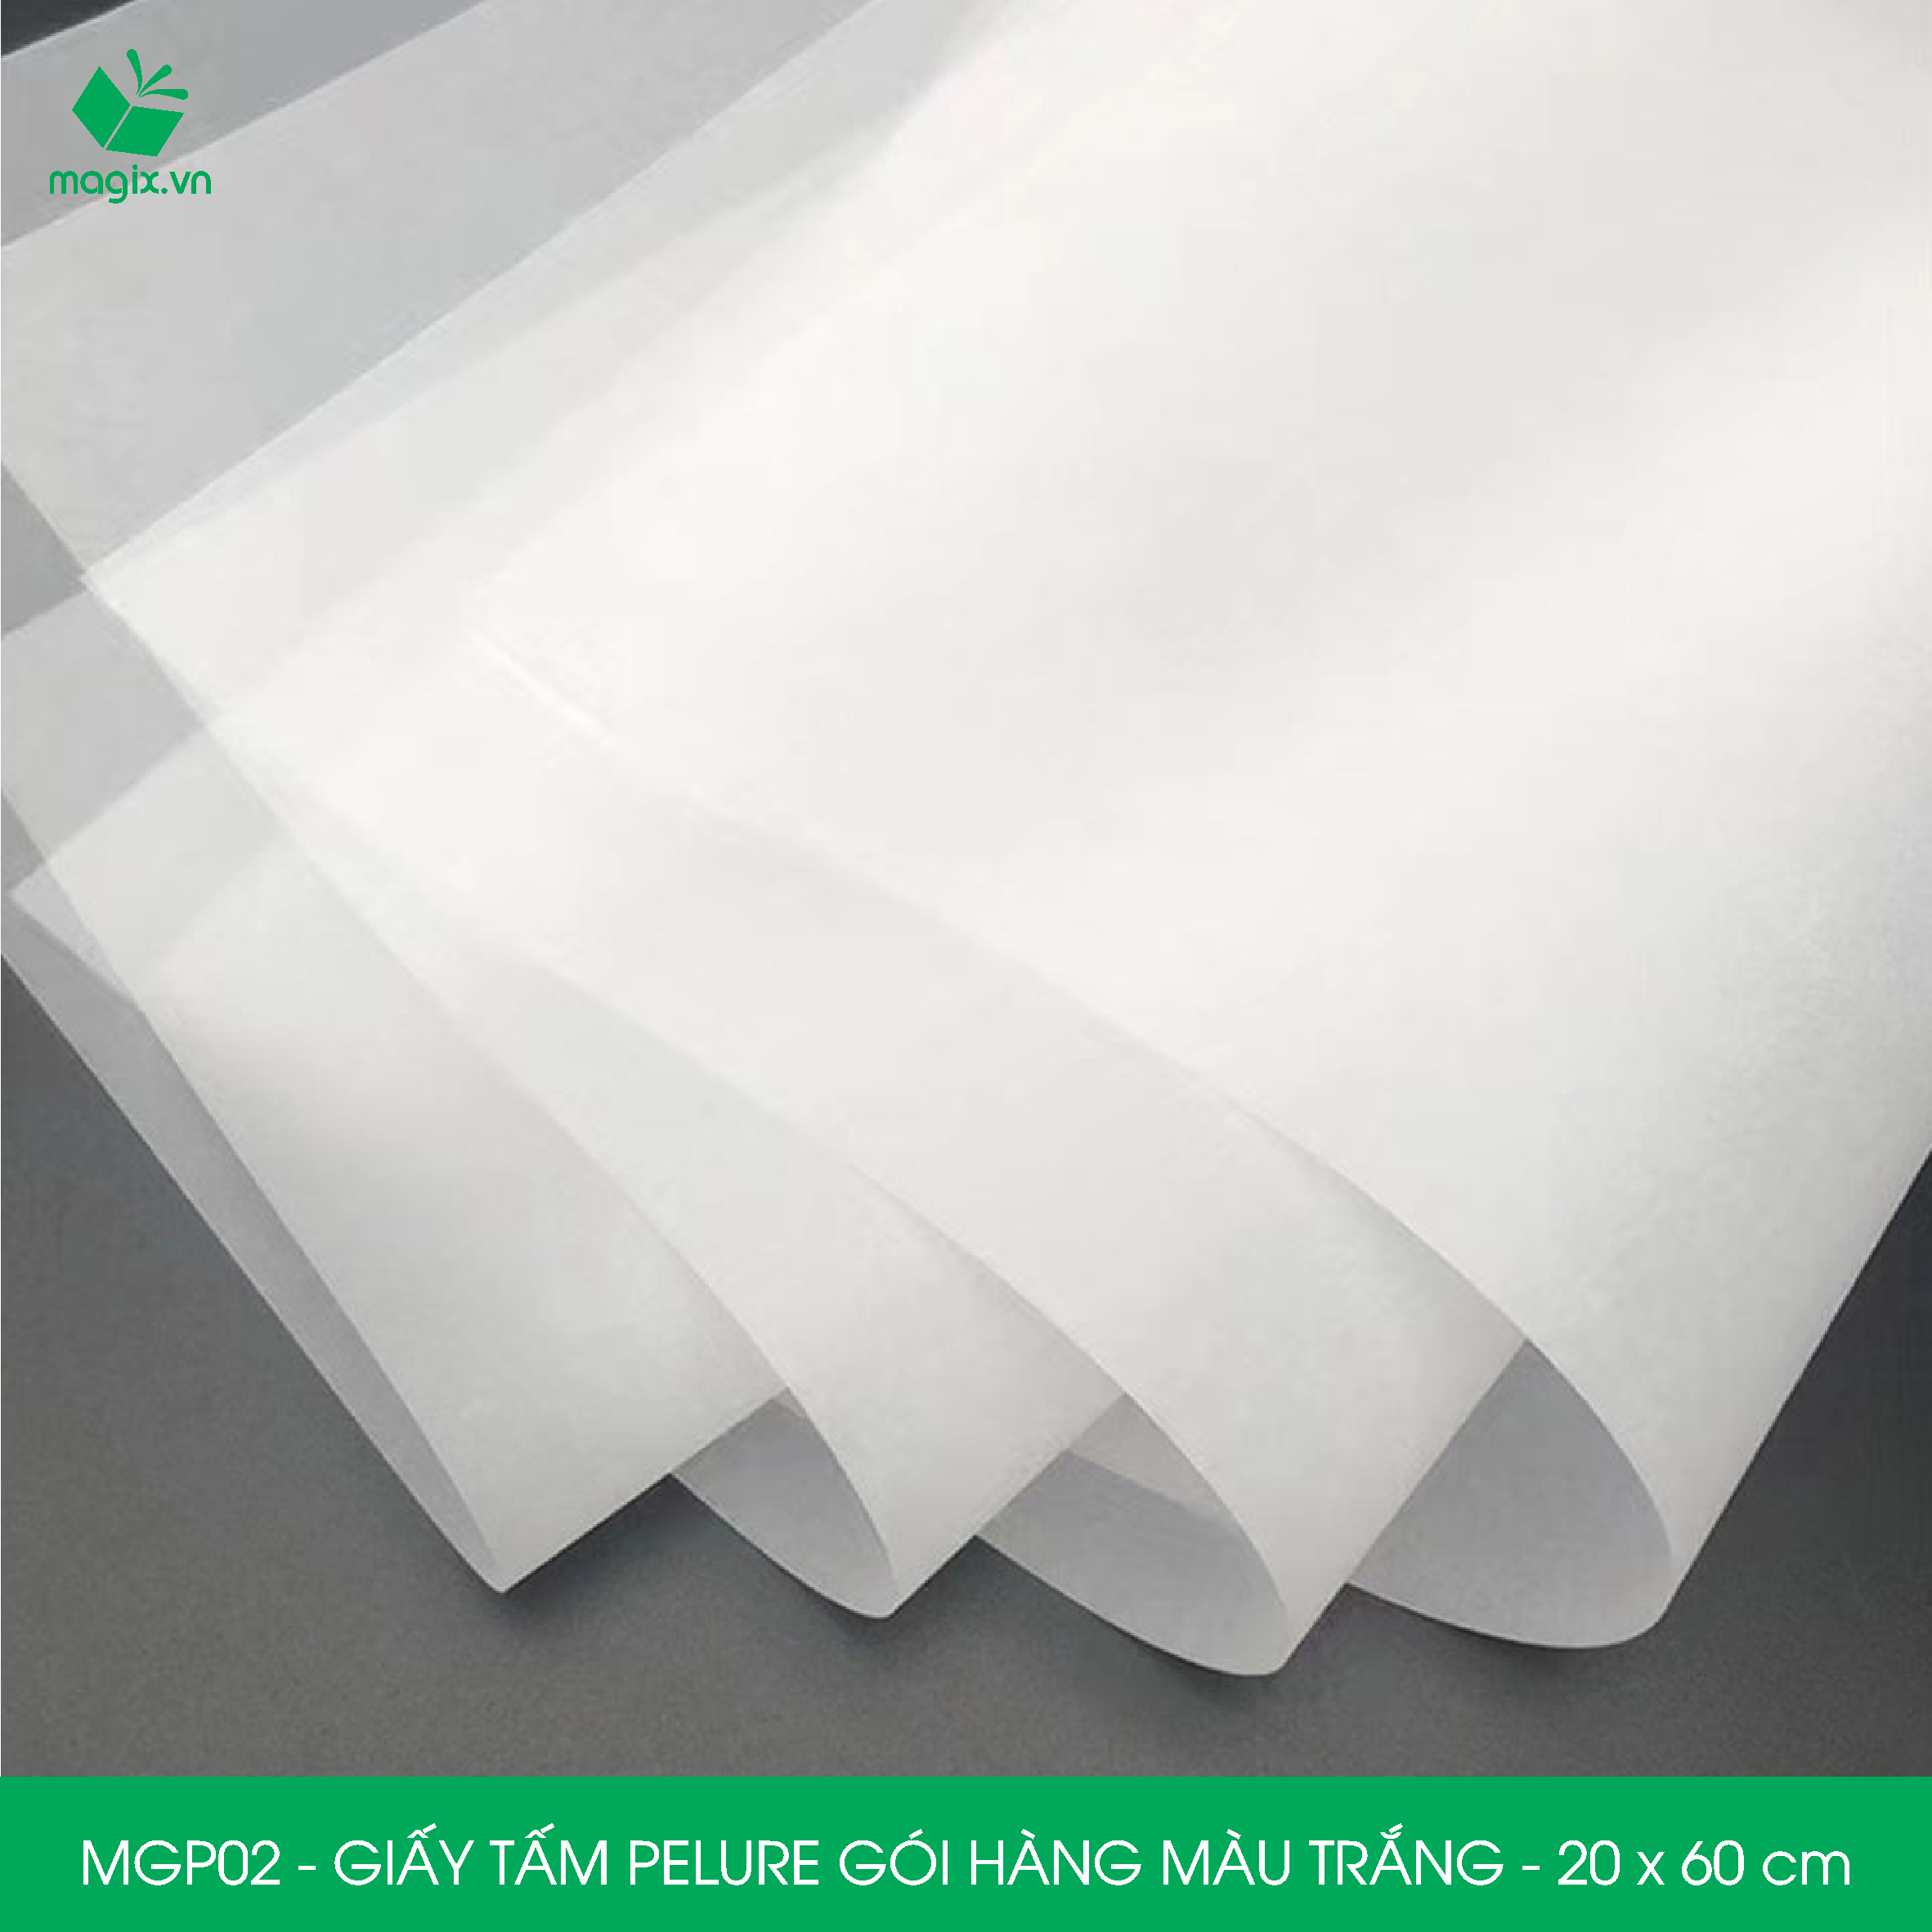 MGP02 - 20x60 cm - 100 tấm giấy Pelure trắng gói hàng, giấy chống ẩm 2 mặt mịn, giấy bọc hàng thời trang